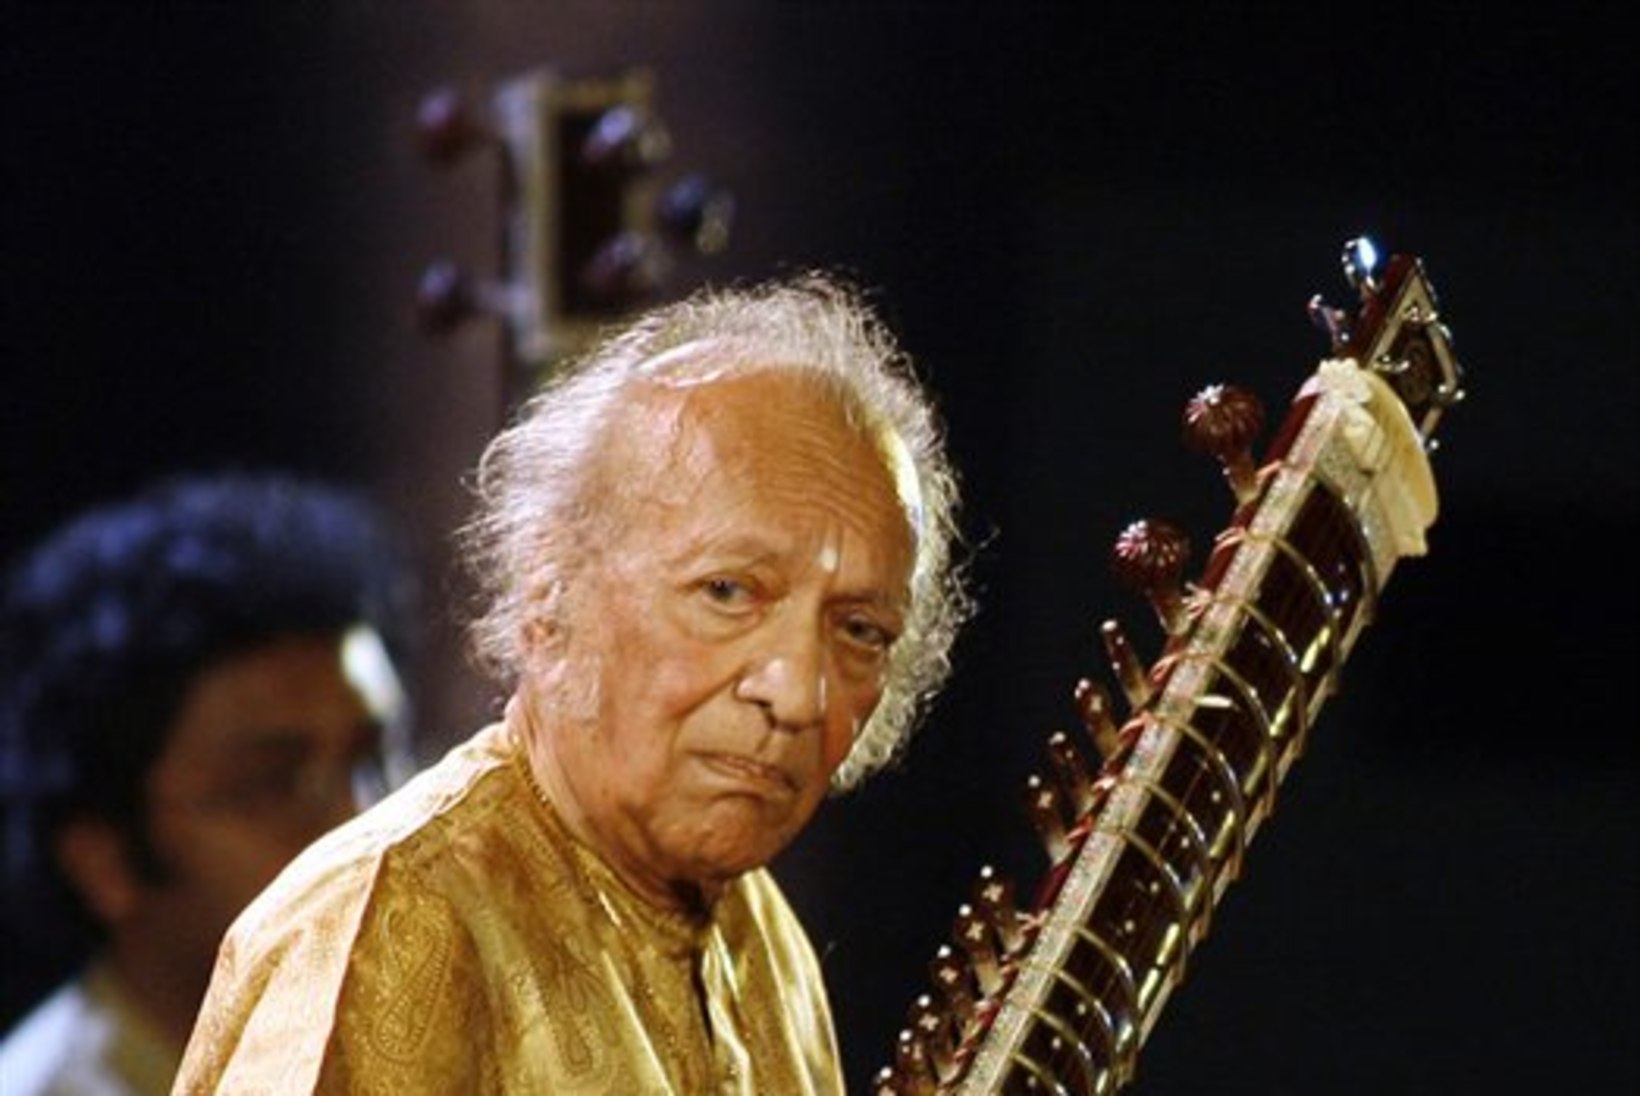 Suri sitarivirtuoos Ravi Shankar